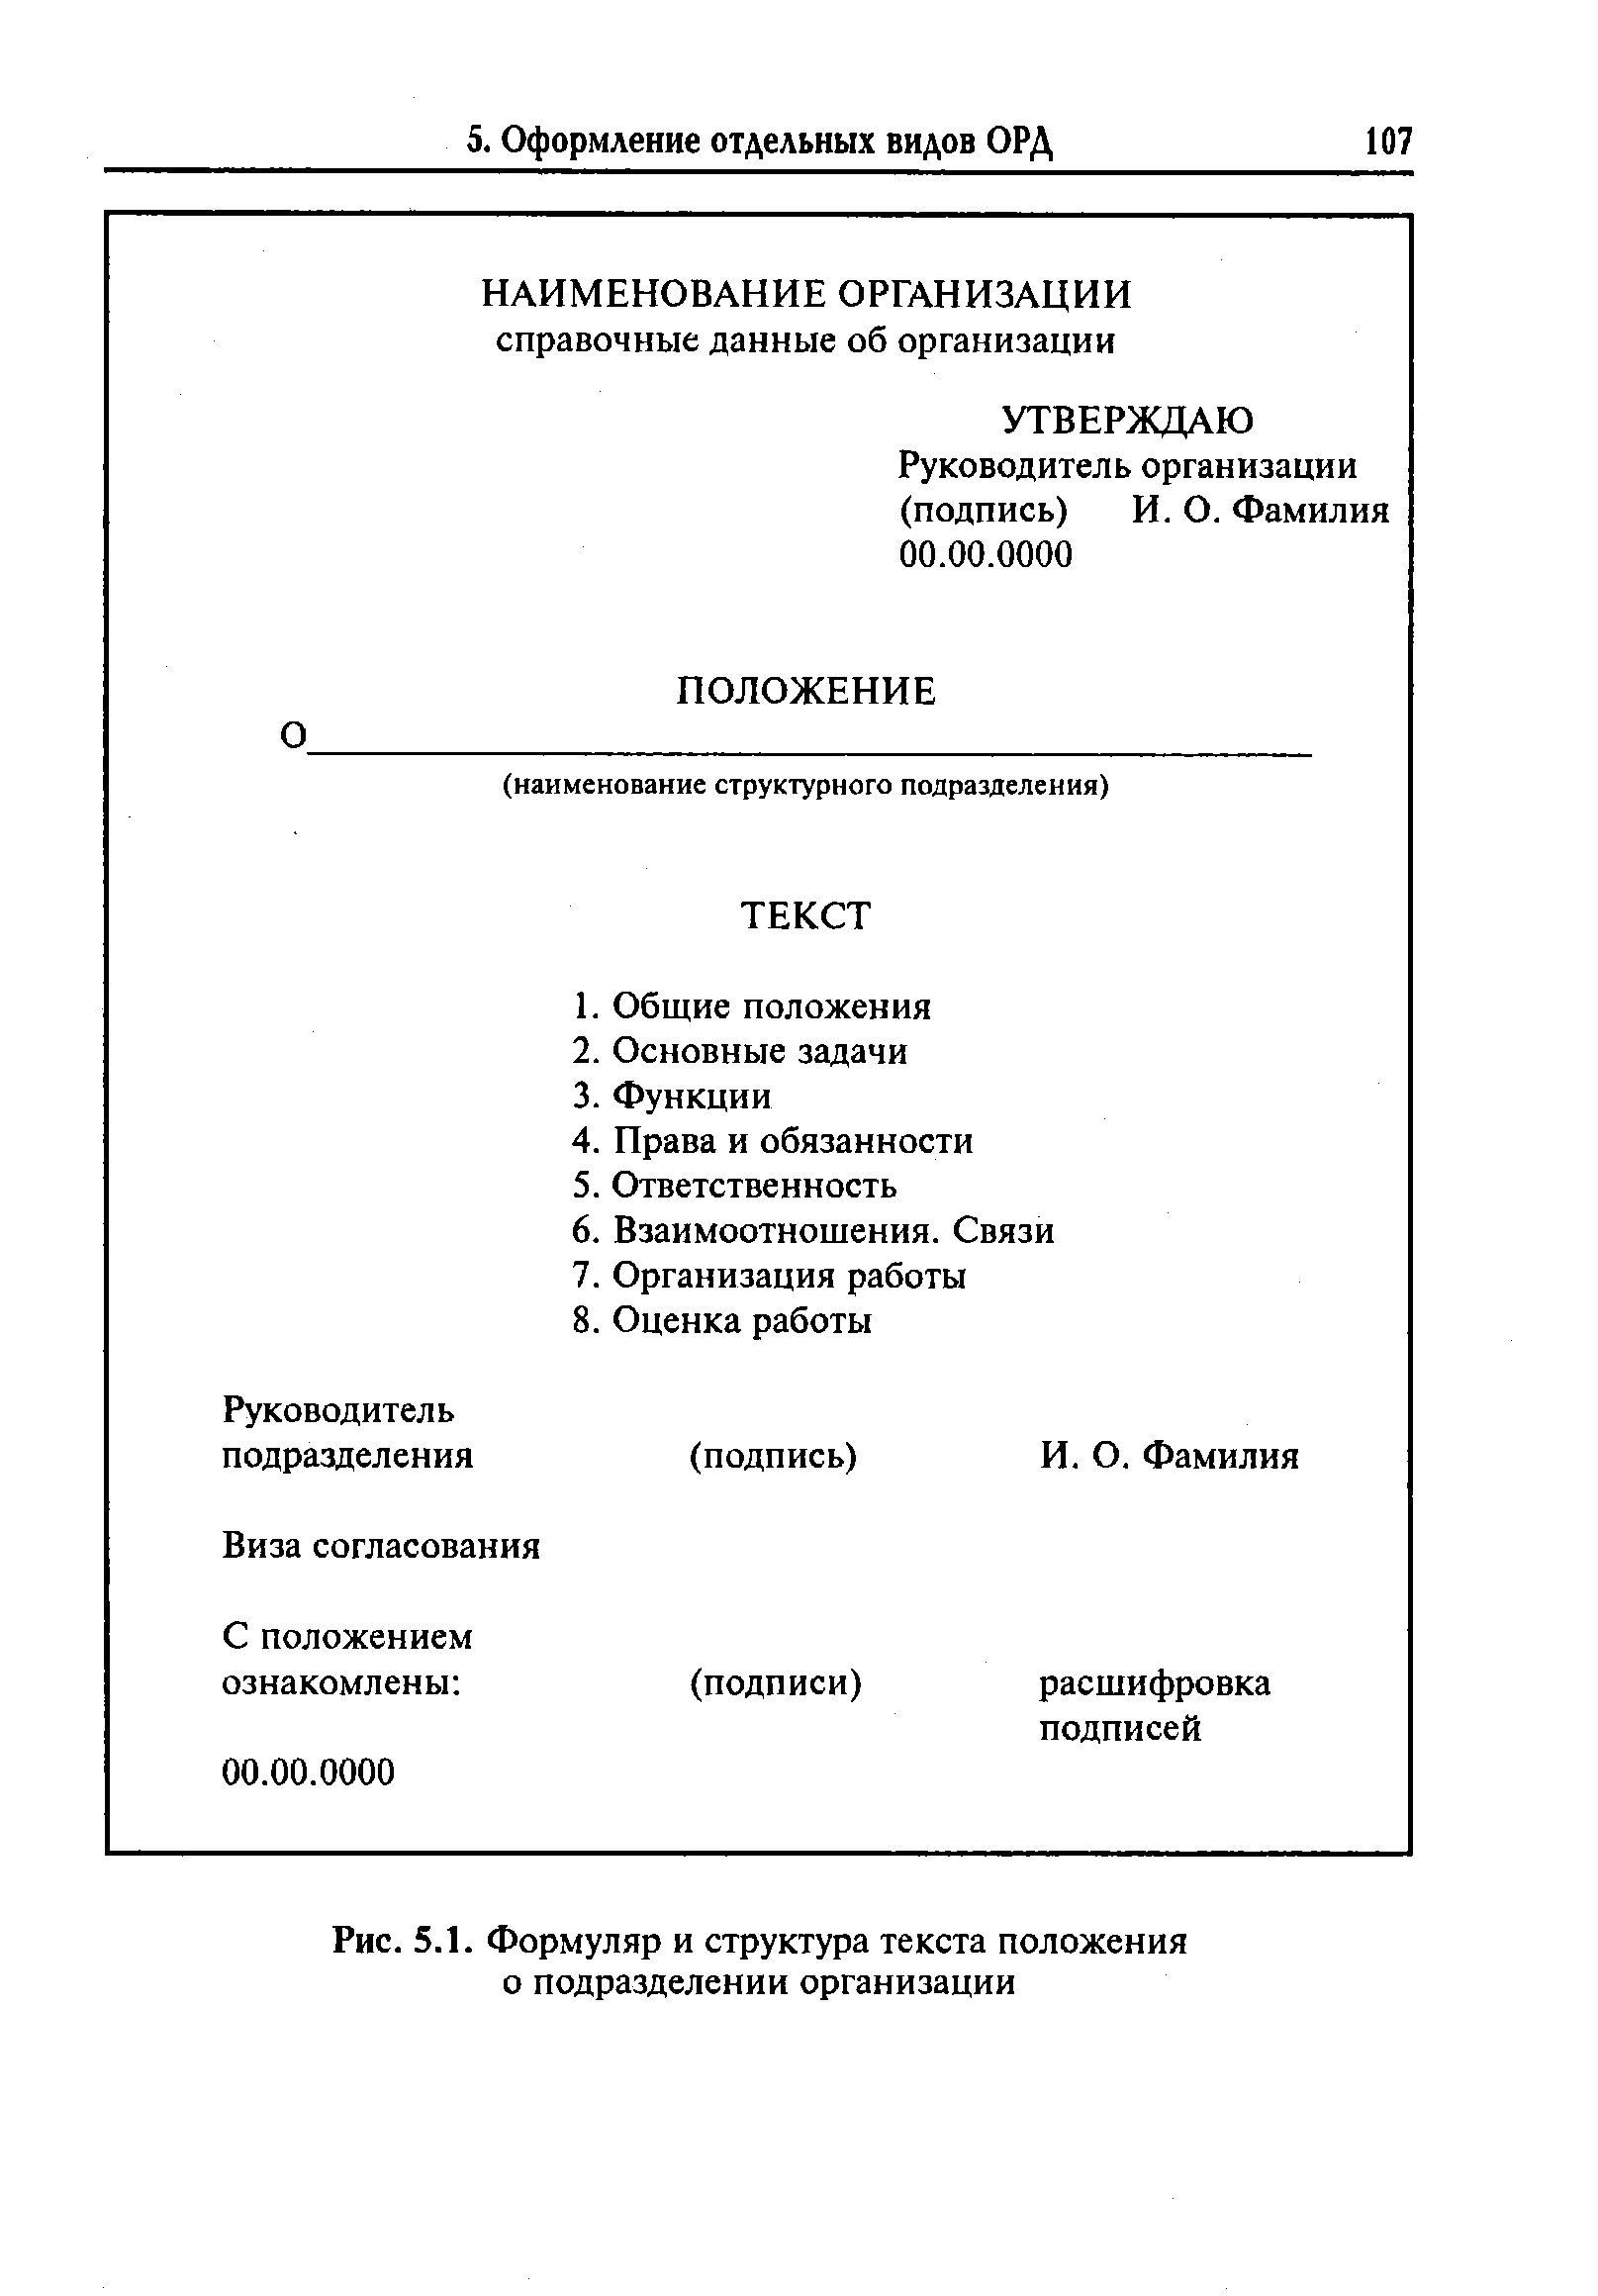 Рис. 5.1. Формуляр и структура текста положения о подразделении организации
